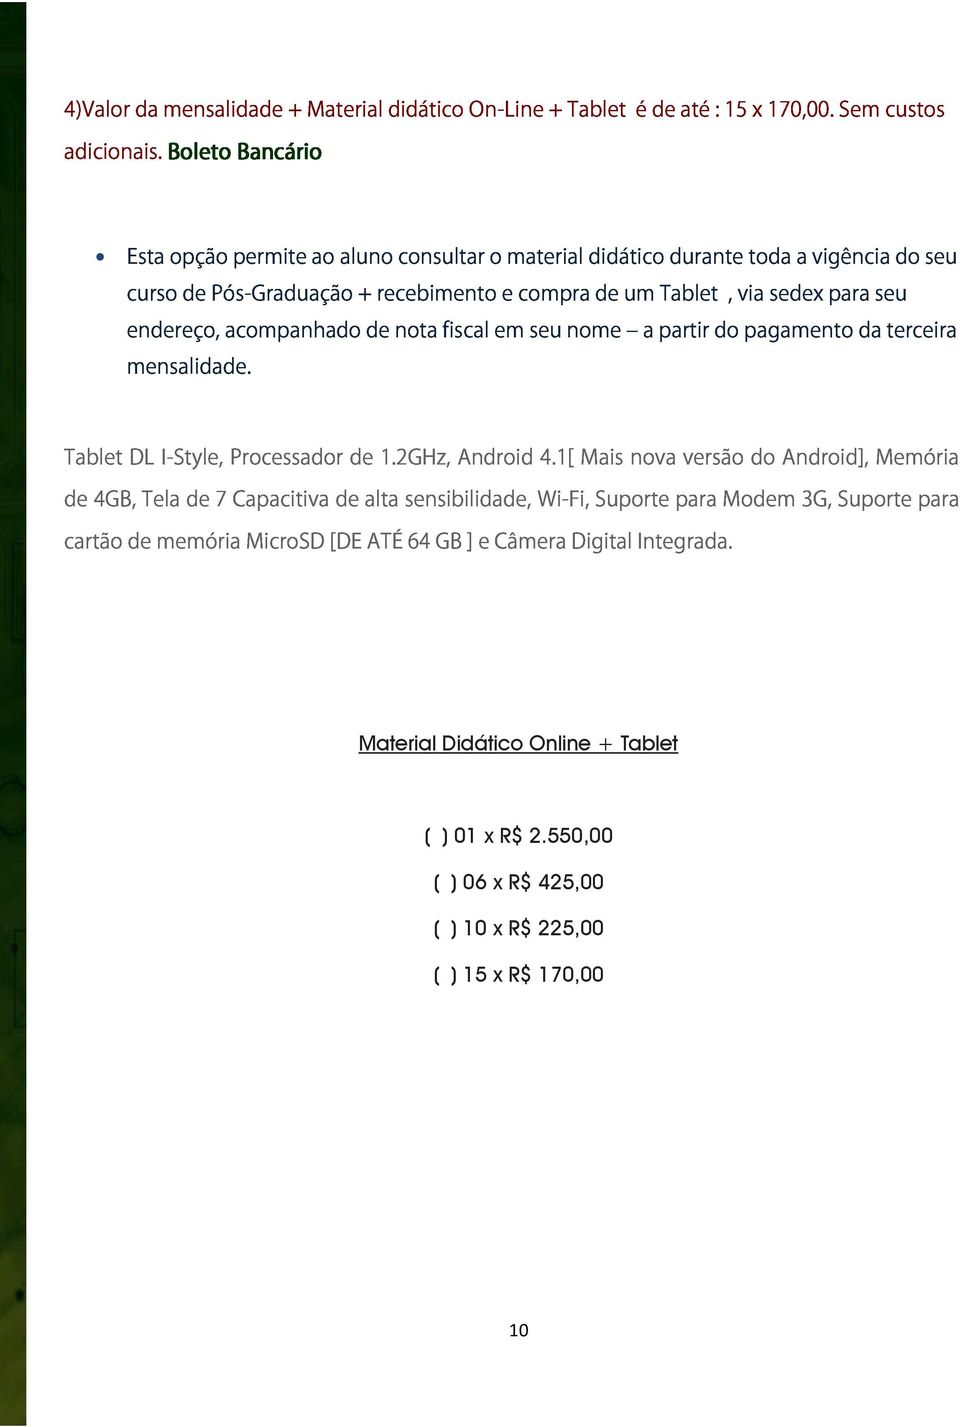 mensalidade. acompanhado de nota fiscal em seu nome a partir do pagamento da terceira Tablet de 4GB, DL Tela I-Style, de 7 Processador Capacitiva de de alta 1.